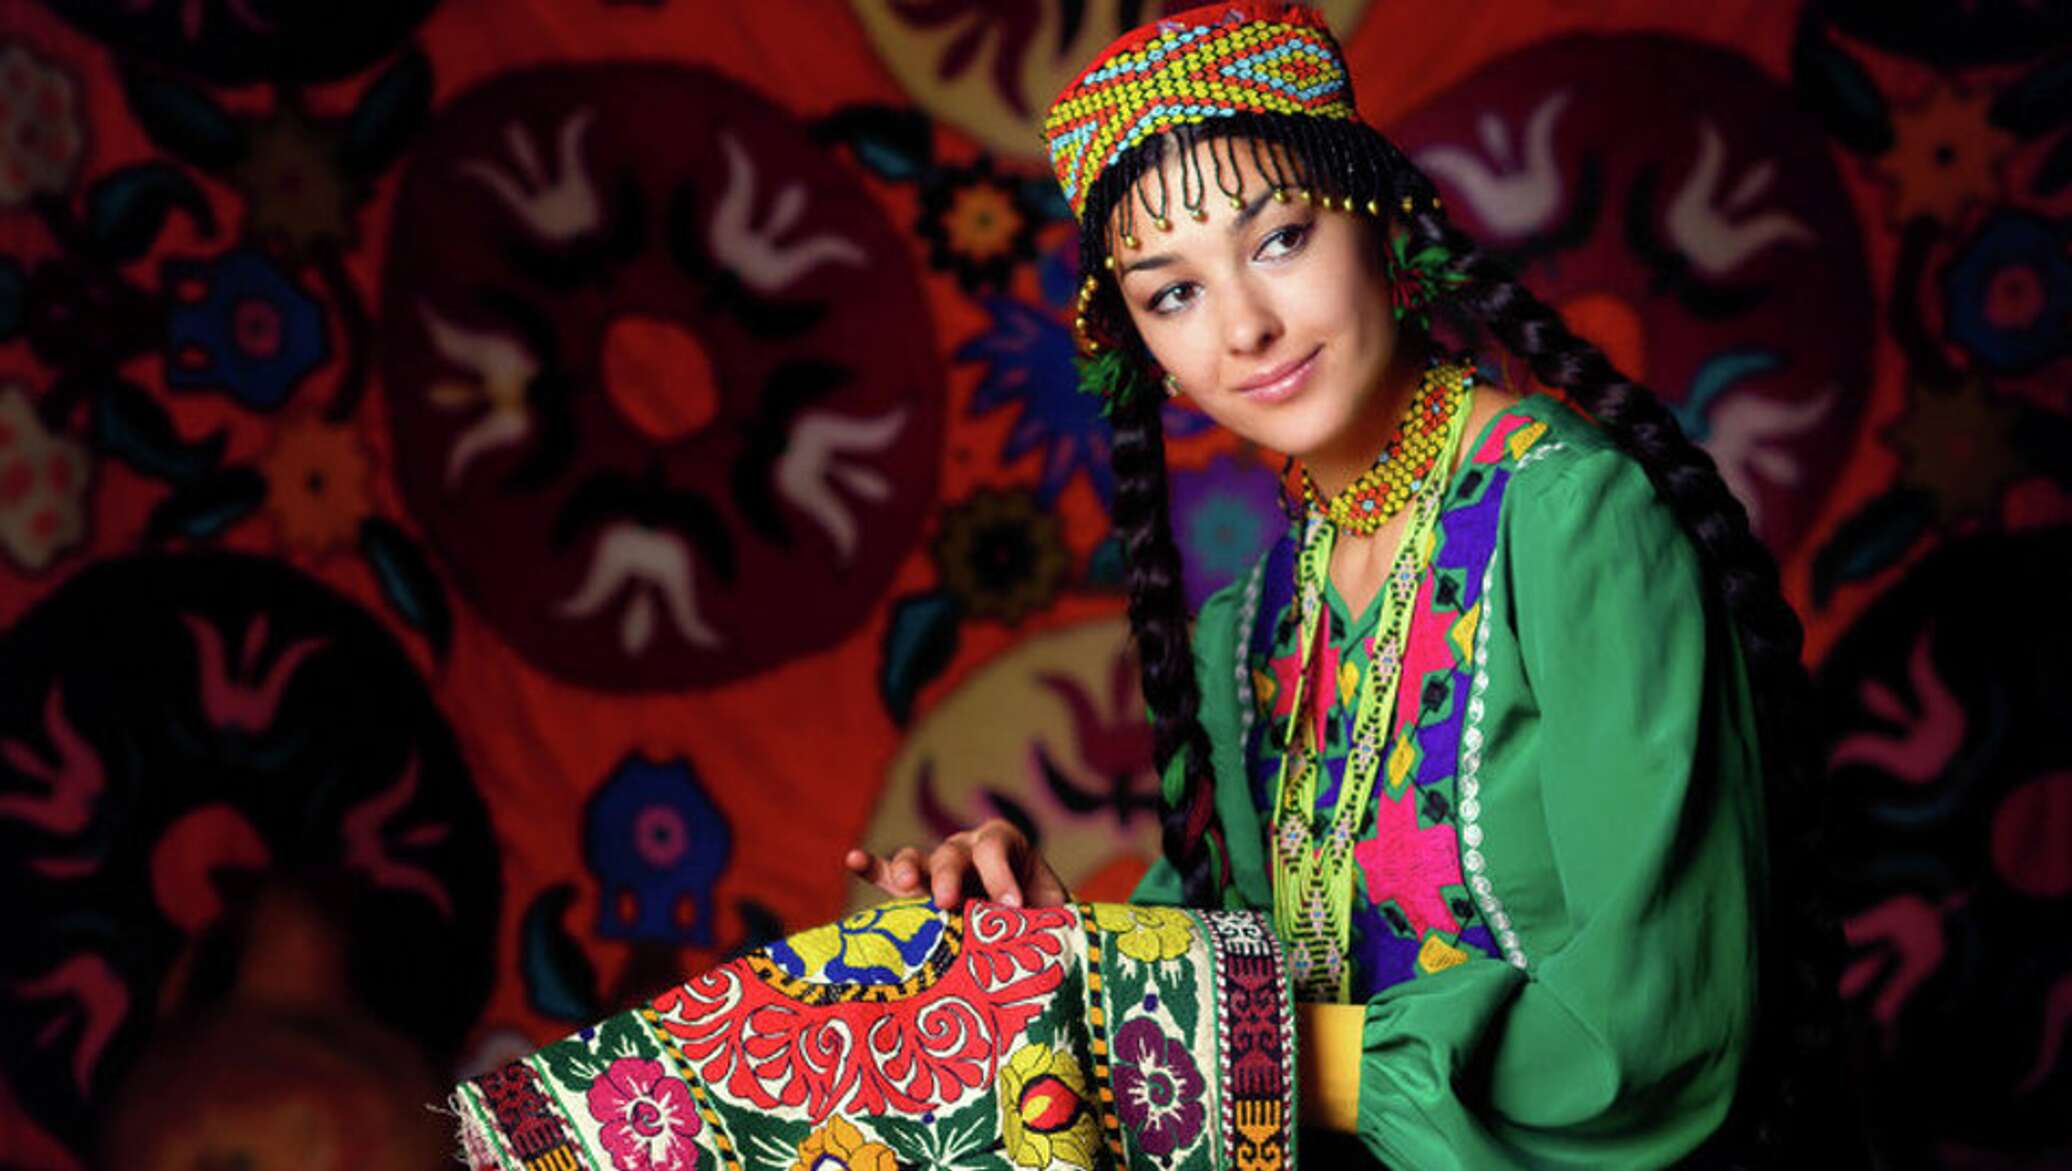 Полно таджикски. Культура Таджикистана. Узбечка. Национальная одежда Таджикистана. Узбечки в национальной одежде.